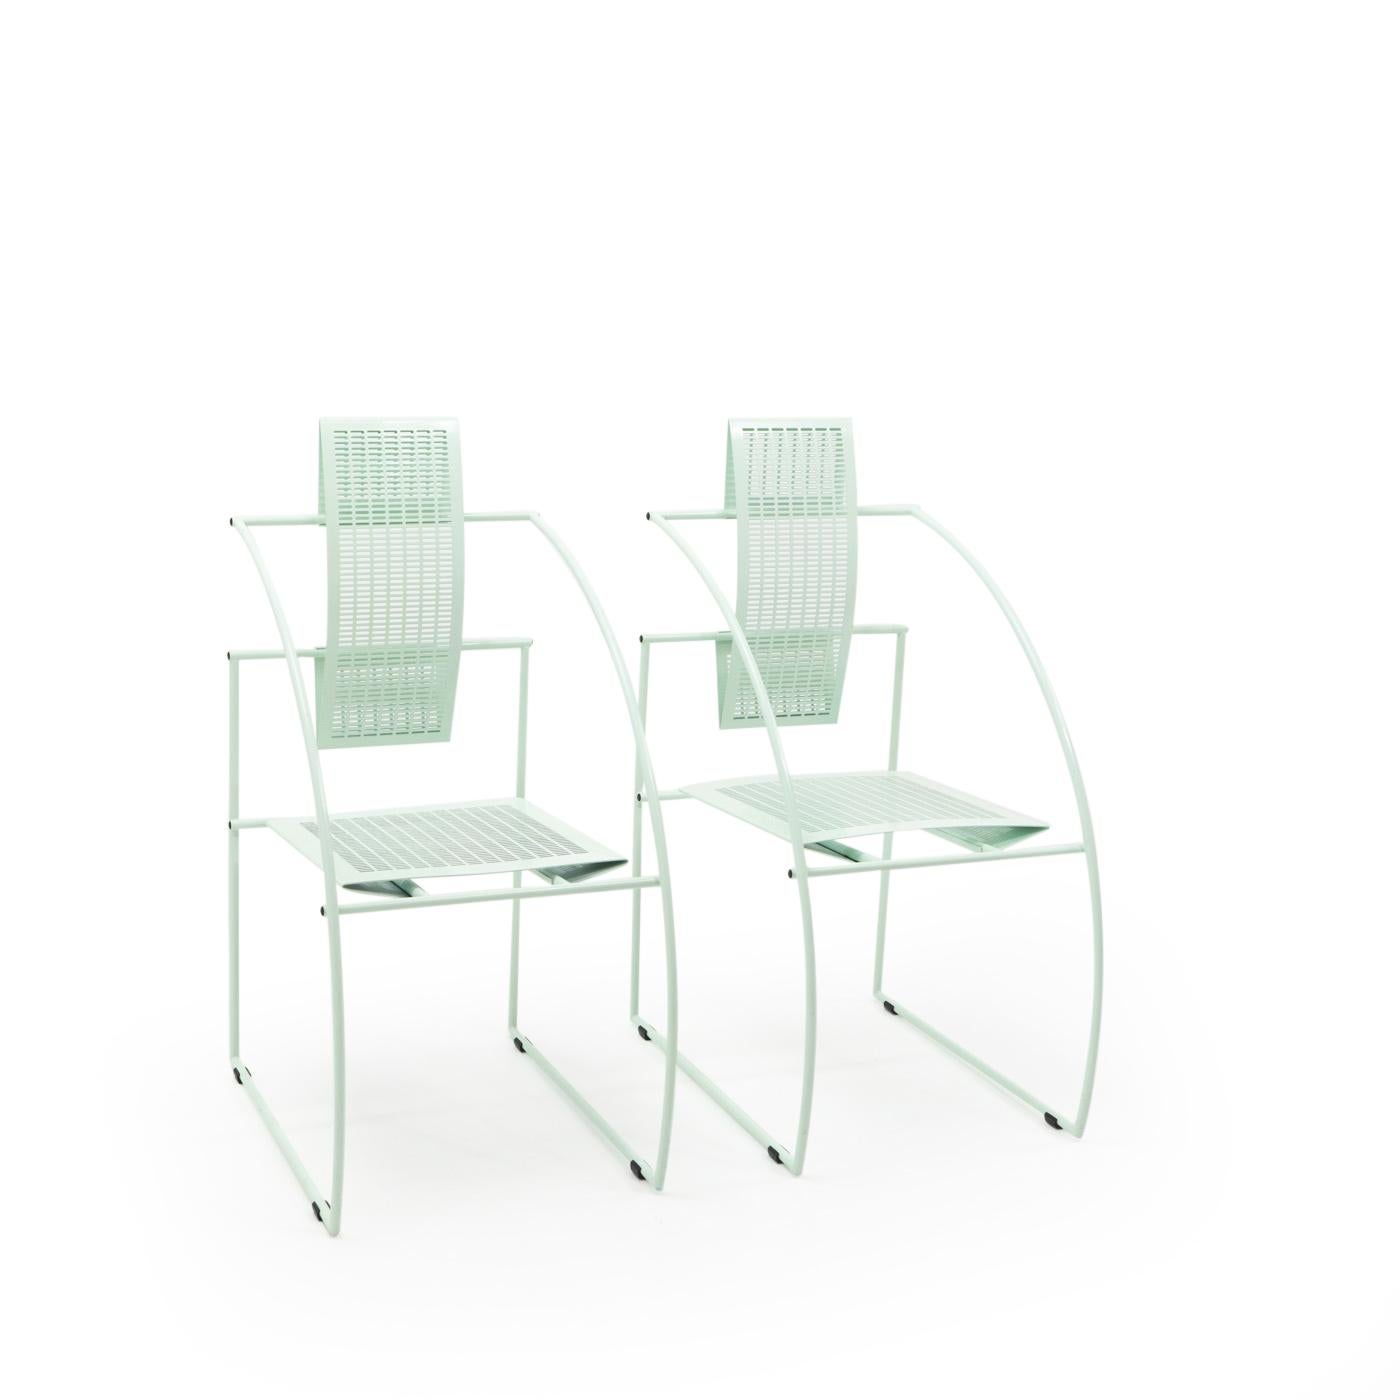 Der Quinta Chair ist ein ikonisches Designobjekt, bei dem die für Bottas Möbel und Lampen typischen Lochbleche und Rohre verwendet werden. Die Linien dieser Stühle sind scharf, rational und symmetrisch und werden als seine Antwort auf die